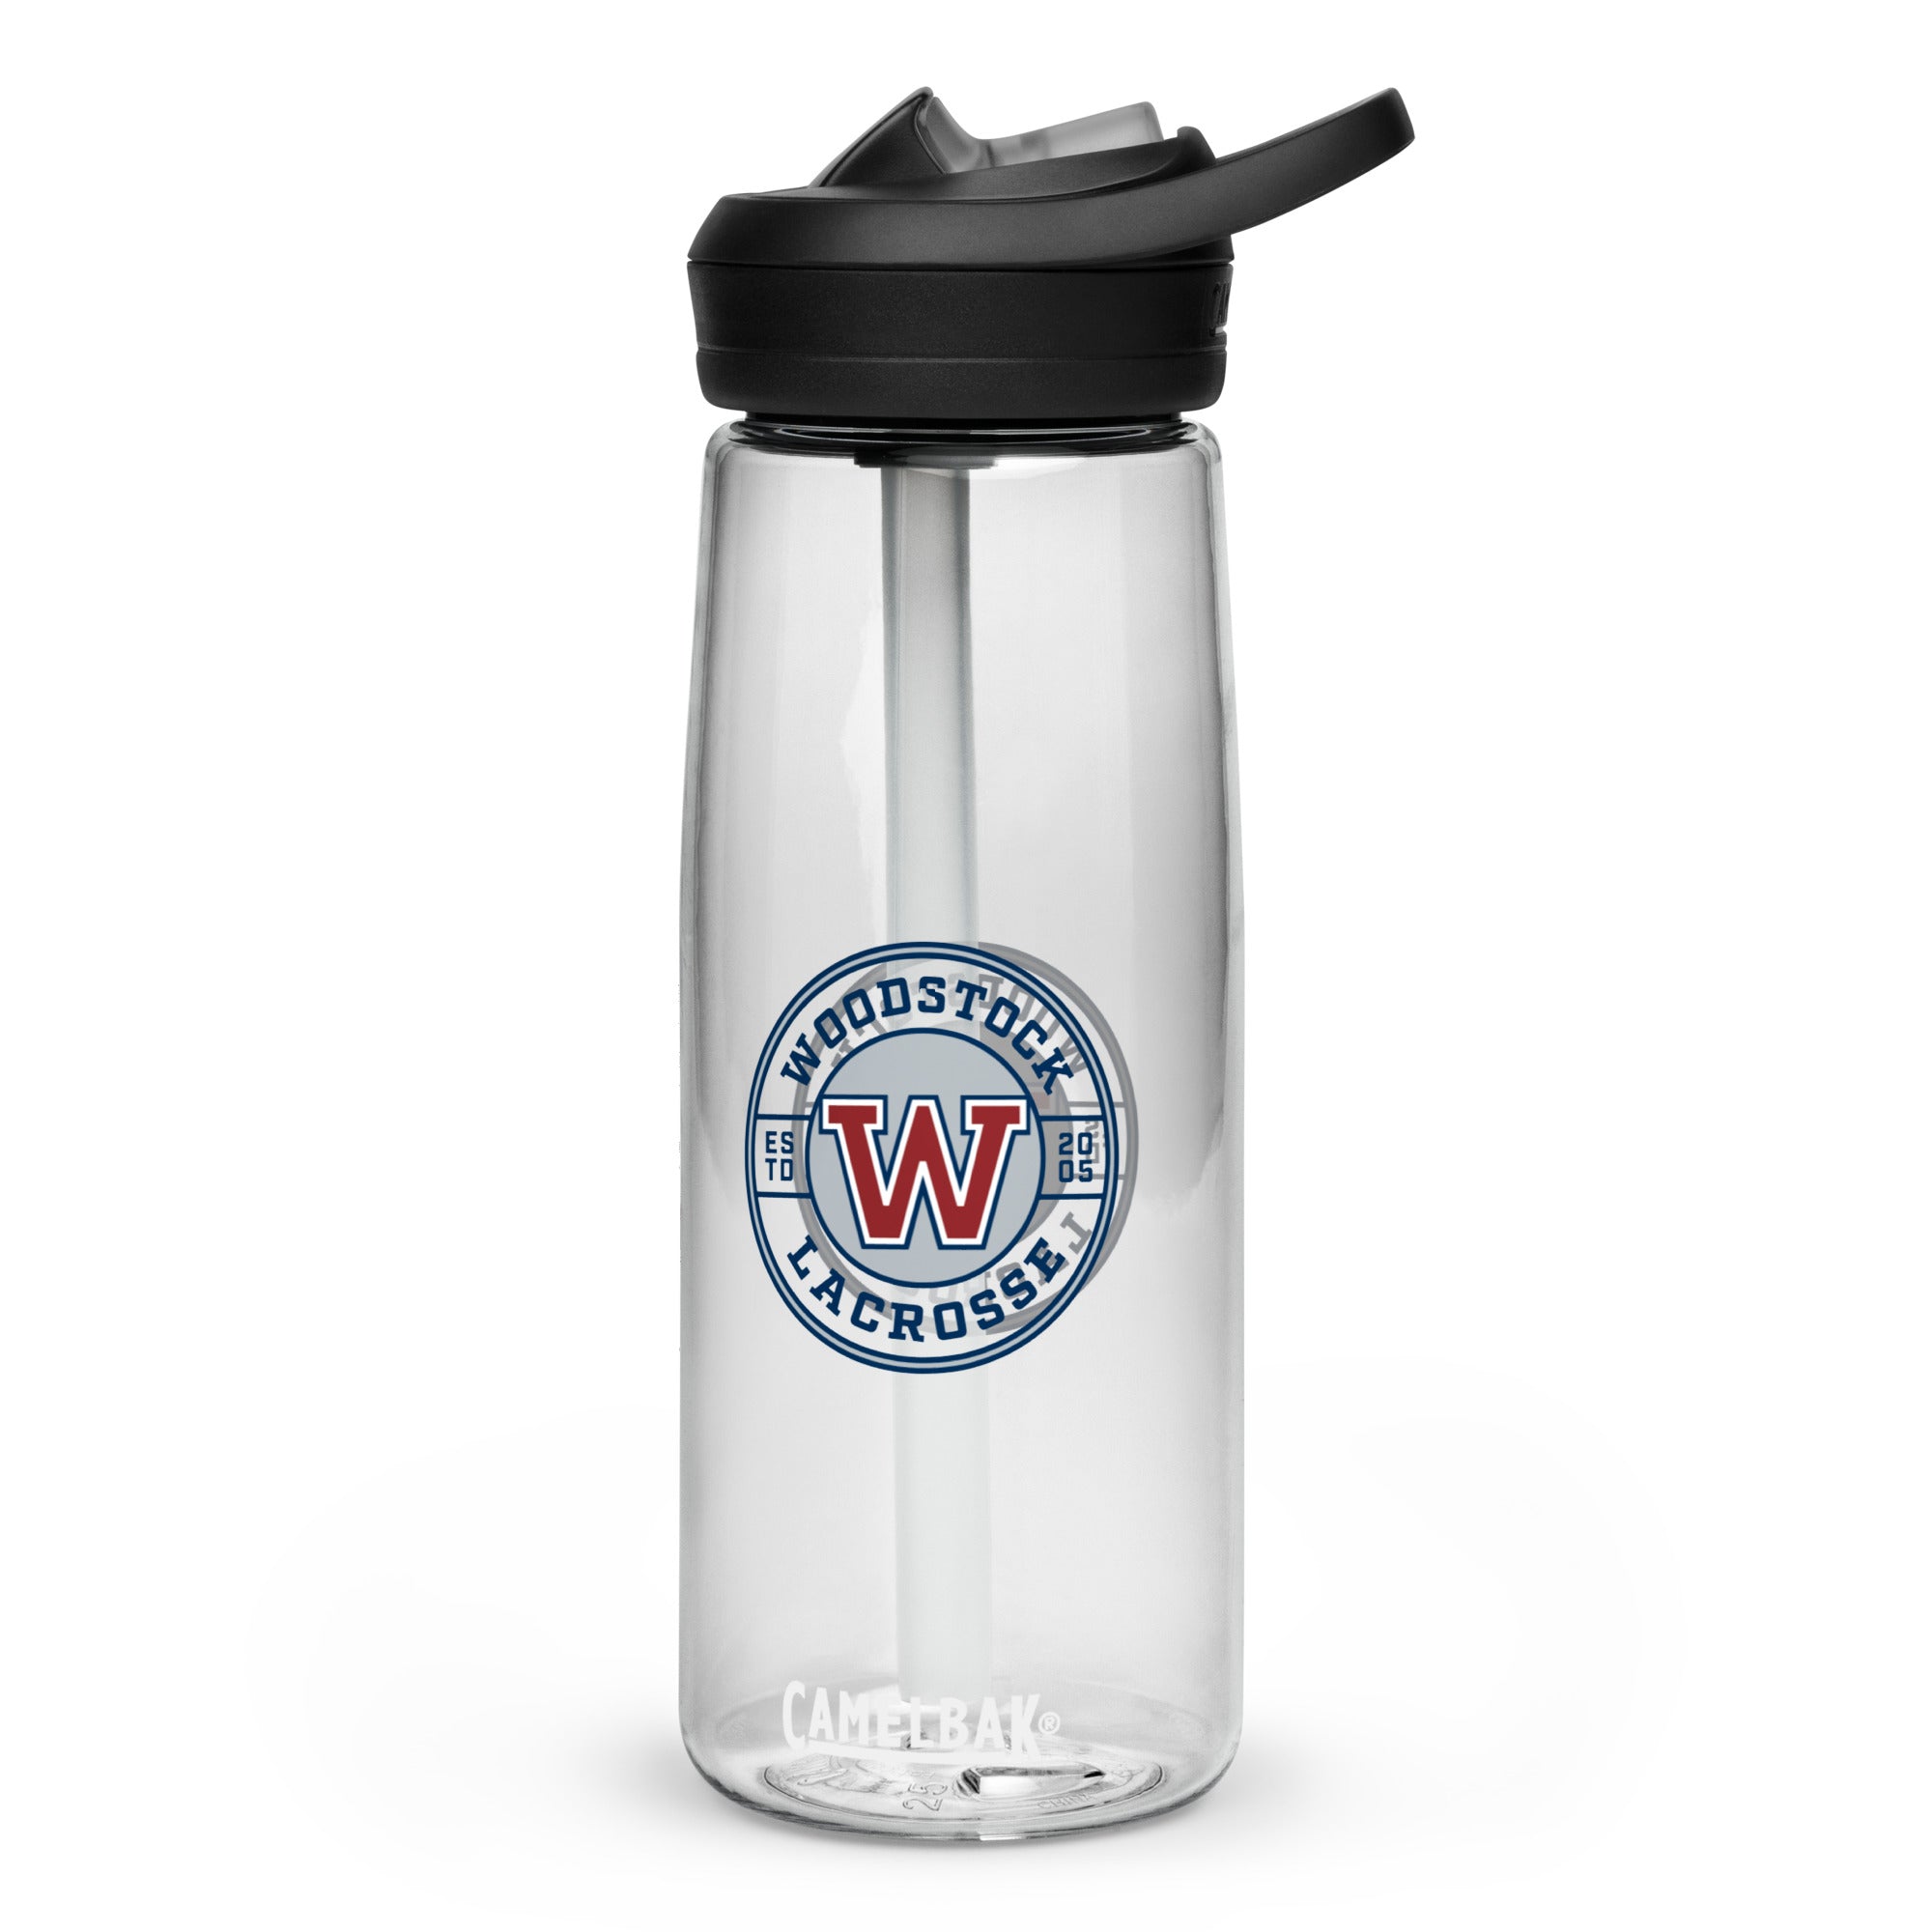 Woodstock Sports water bottle